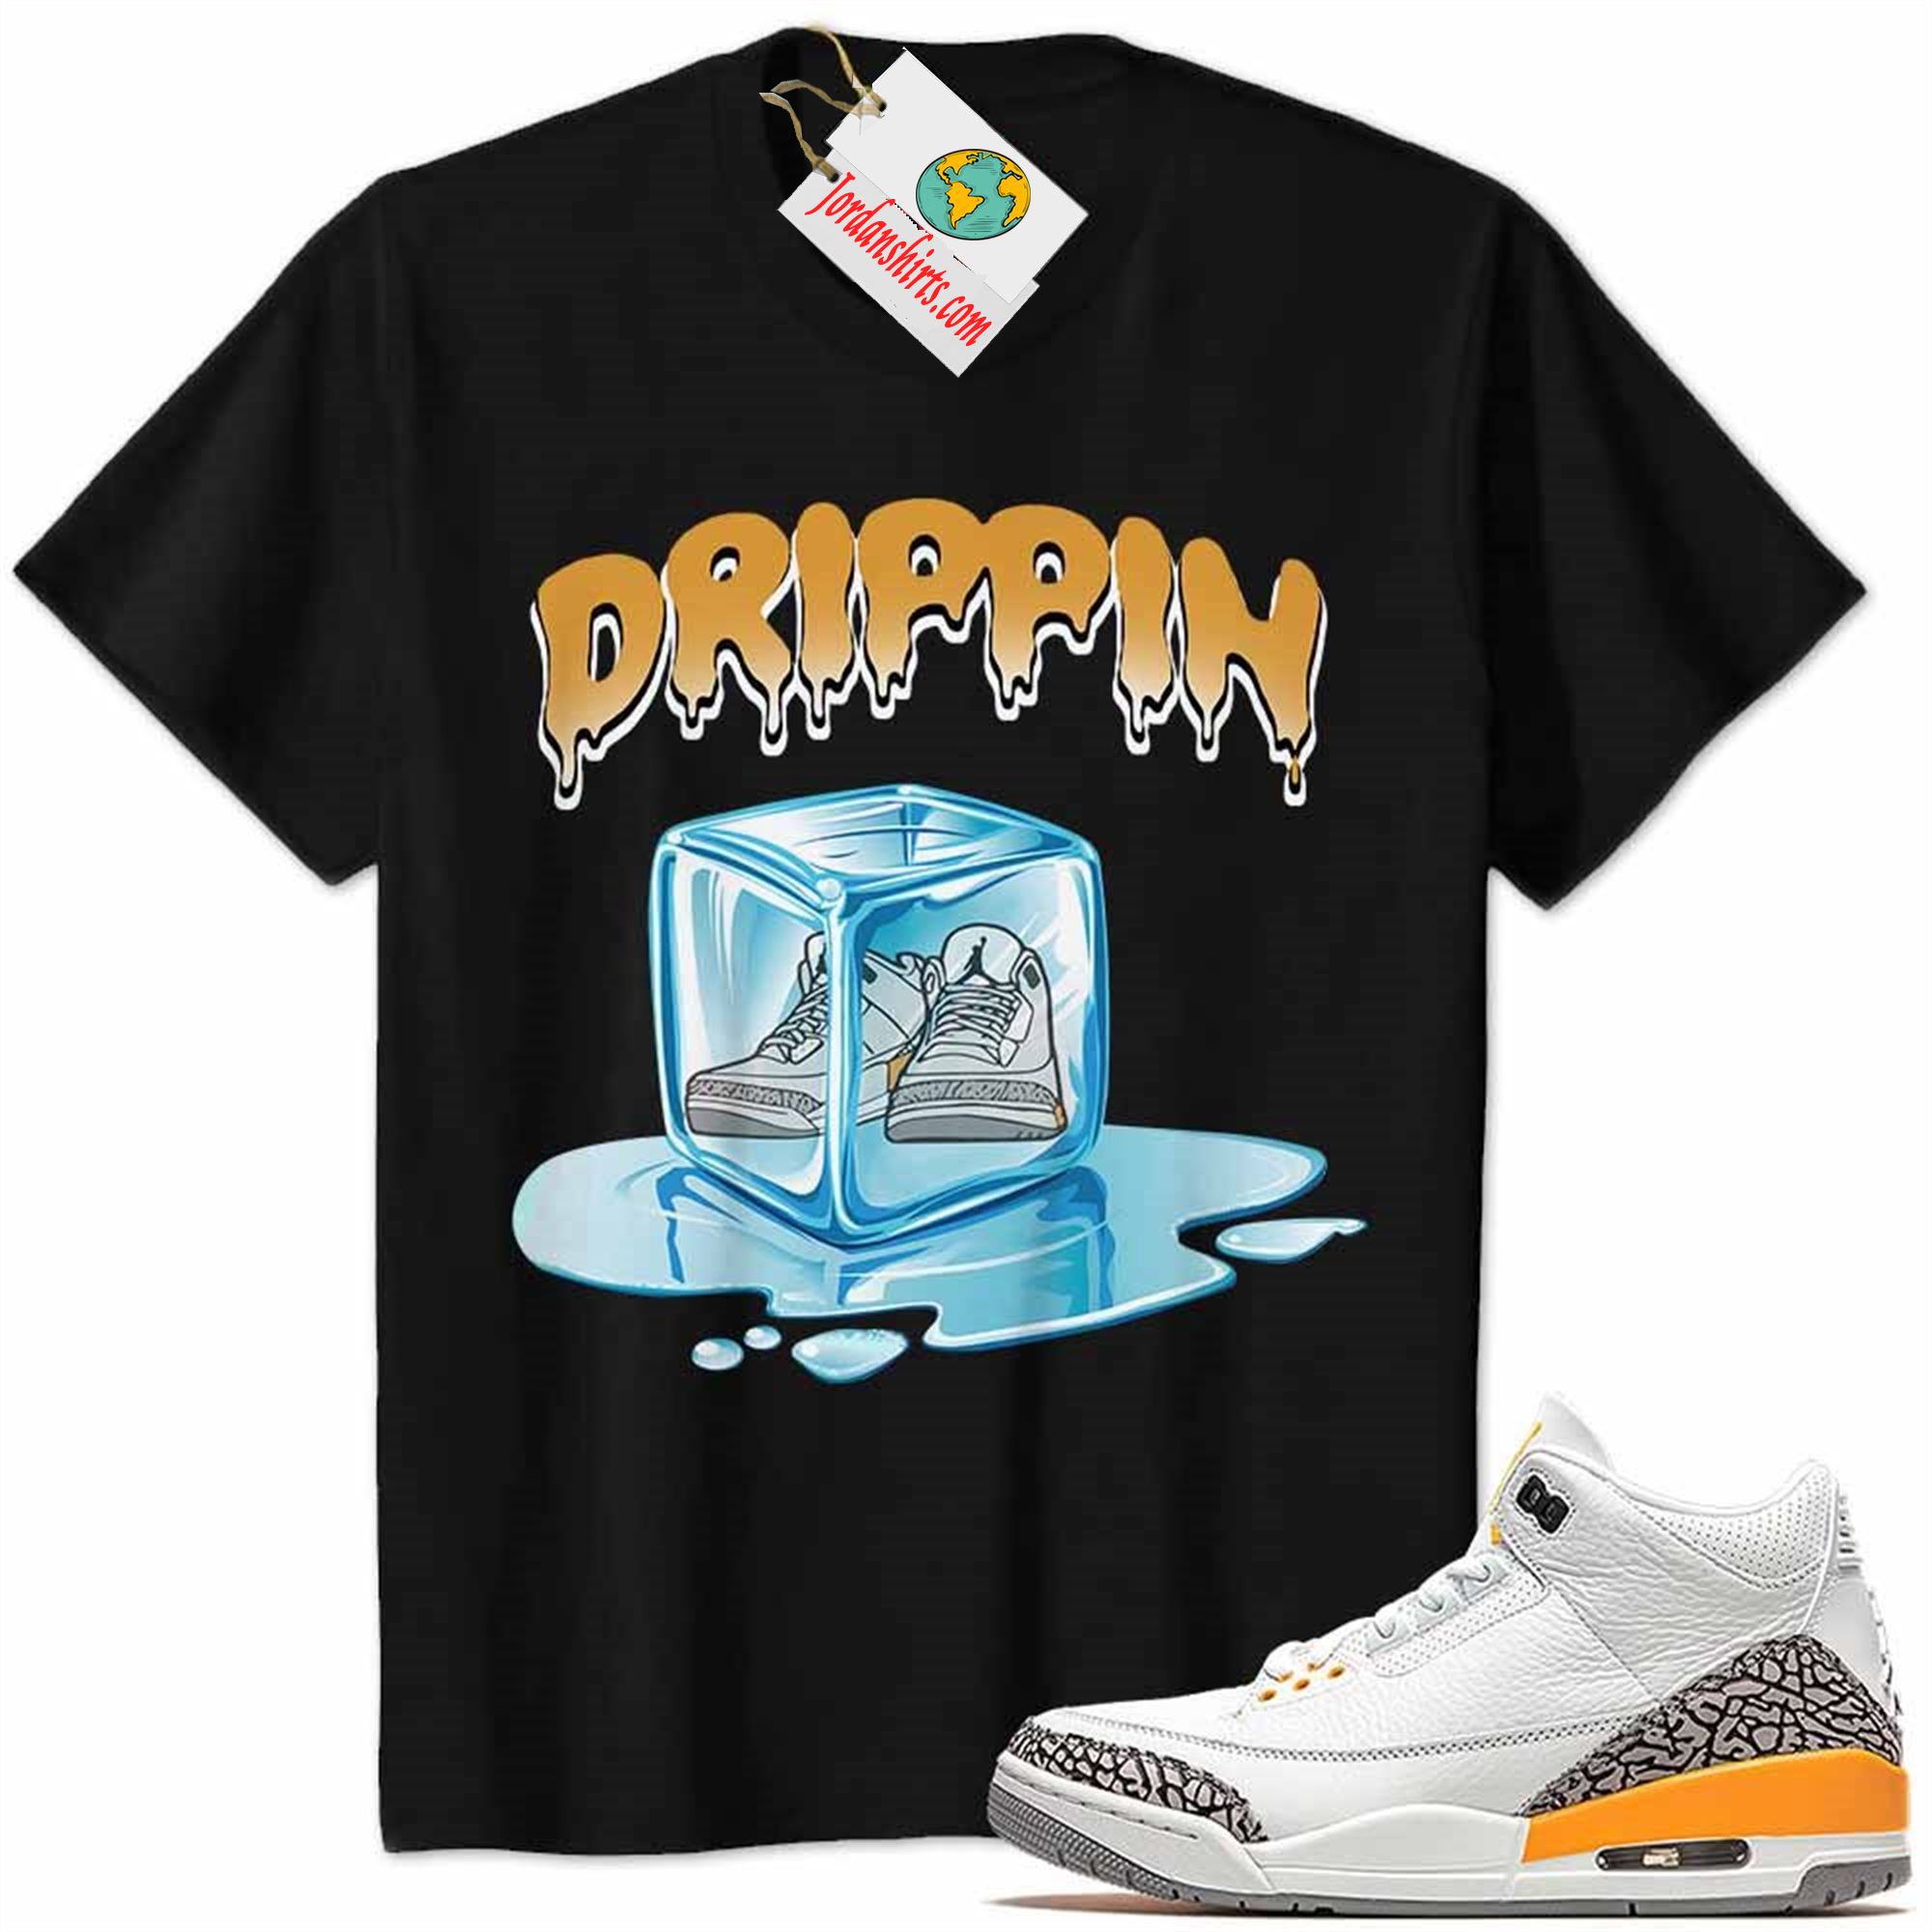 Jordan 3 Shirt, Jordan 3 Laser Orange Shirt Ice Cube Melting Black Full Size Up To 5xl